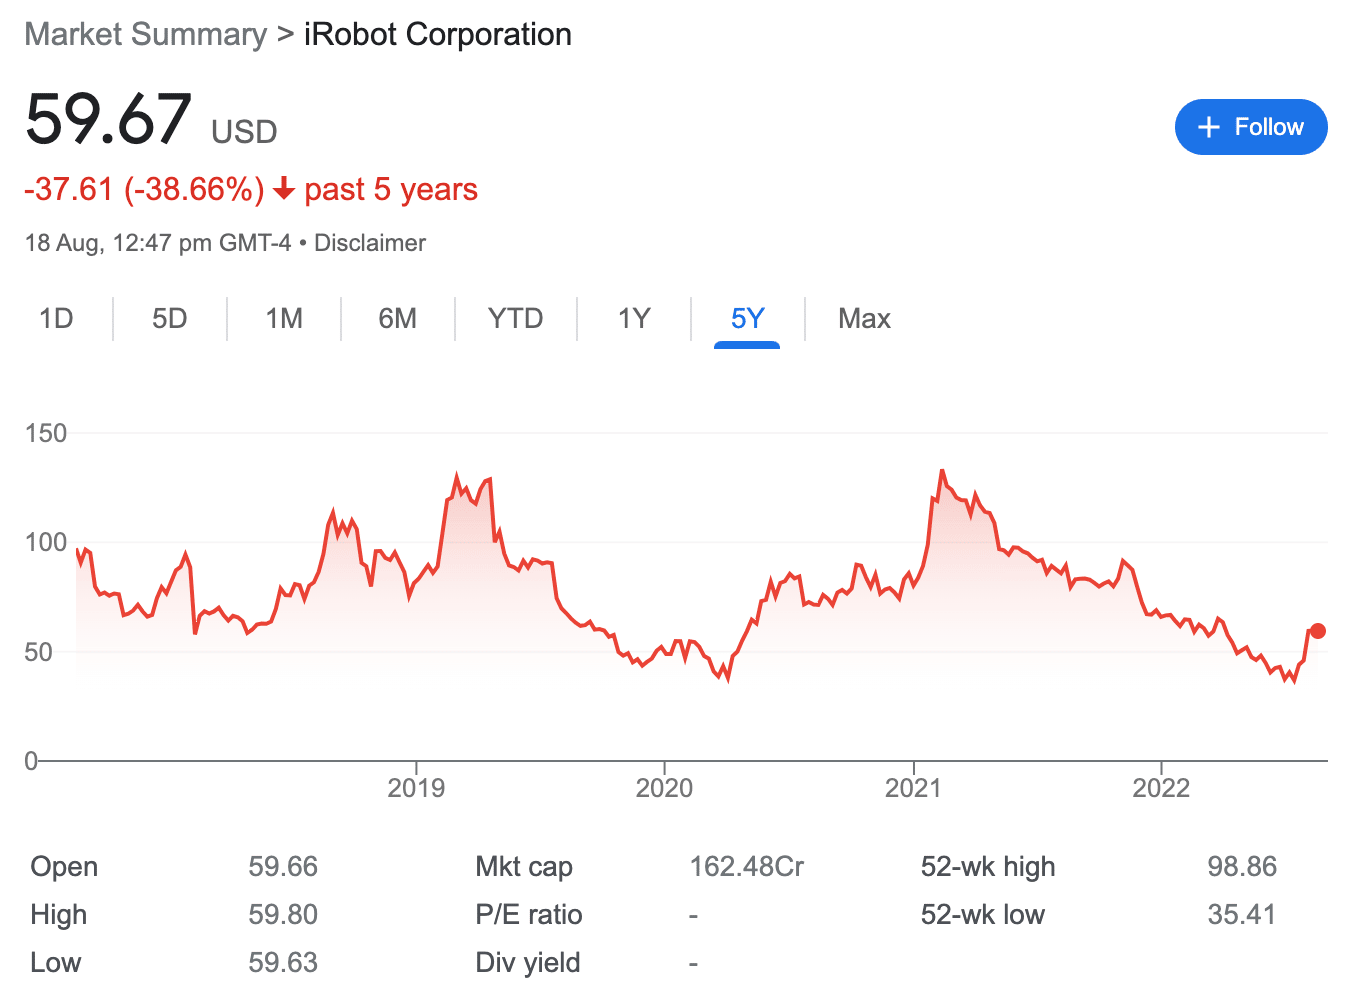 iRobot stock price